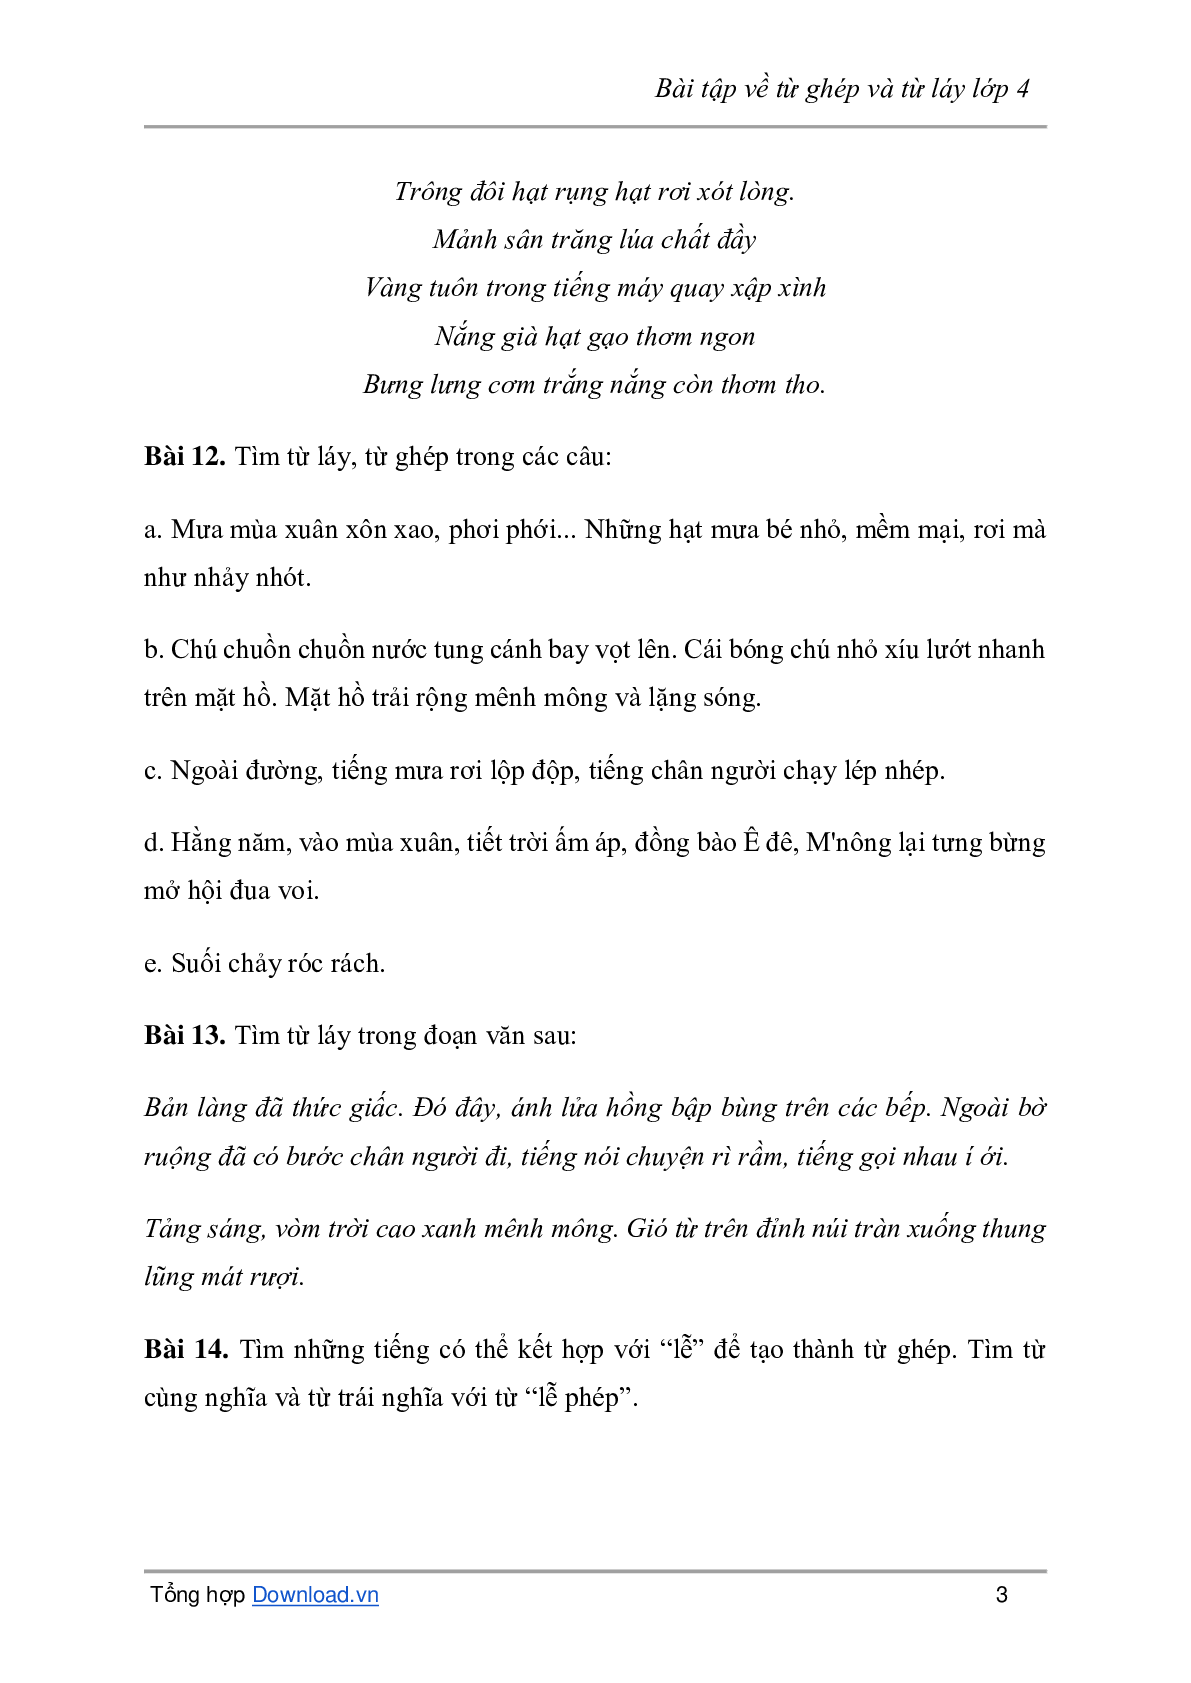 Bài tập về từ ghép và từ láy môn Tiếng Việt lớp 4 có đáp án (trang 3)